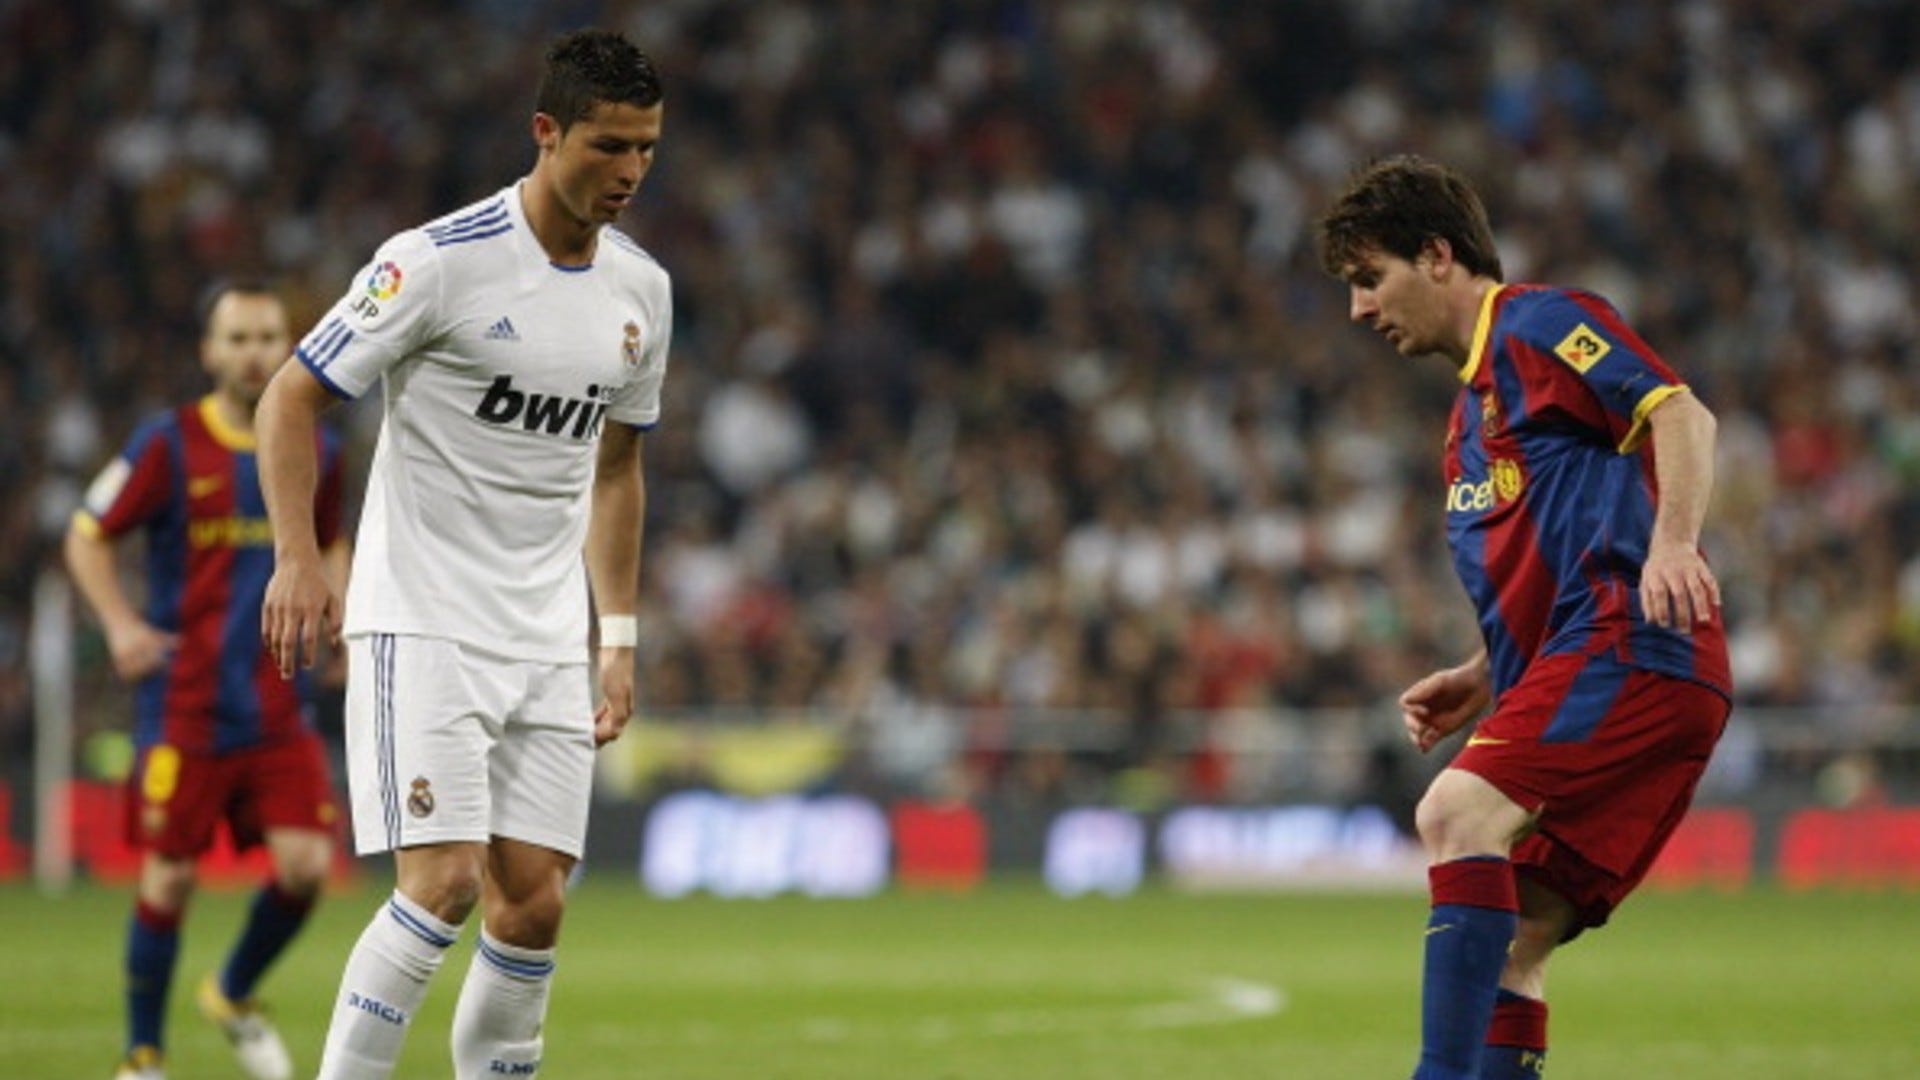 Lionel Messi: Hãy xem hình ảnh của một trong những cầu thủ bóng đá vĩ đại nhất mọi thời đại - Lionel Messi. Cùng chiêm ngưỡng những pha bóng kỹ thuật tuyệt đỉnh của anh và nhận ra tại sao anh ấy được xem là một trong những cầu thủ số một trên thế giới.